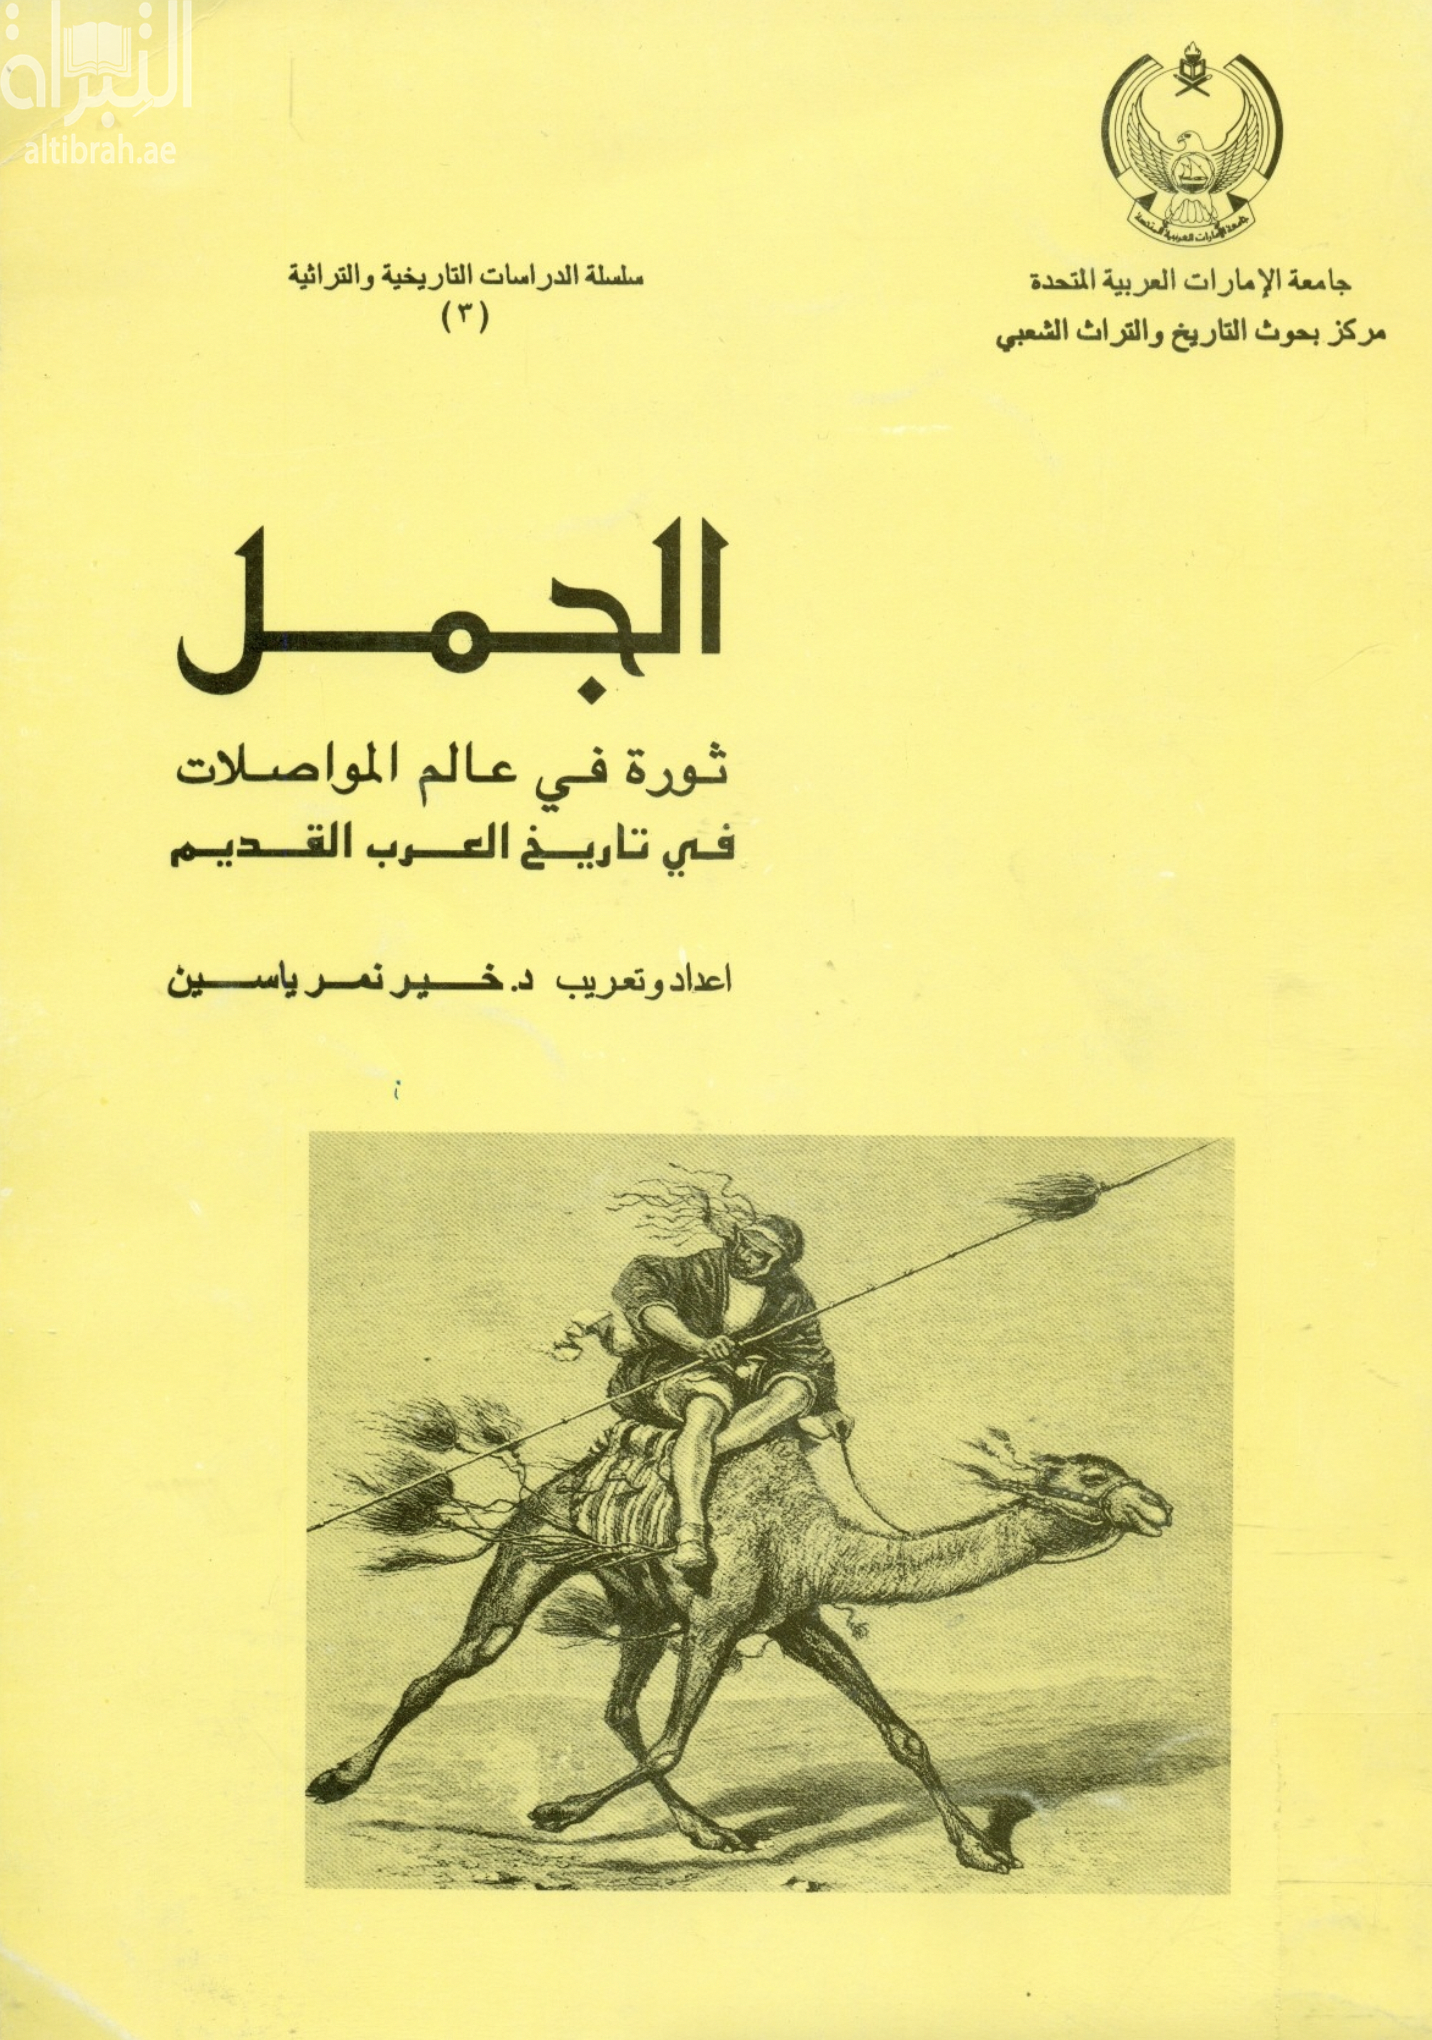 الجمل : ثورة في عالم المواصلات في تاريخ العرب القديم